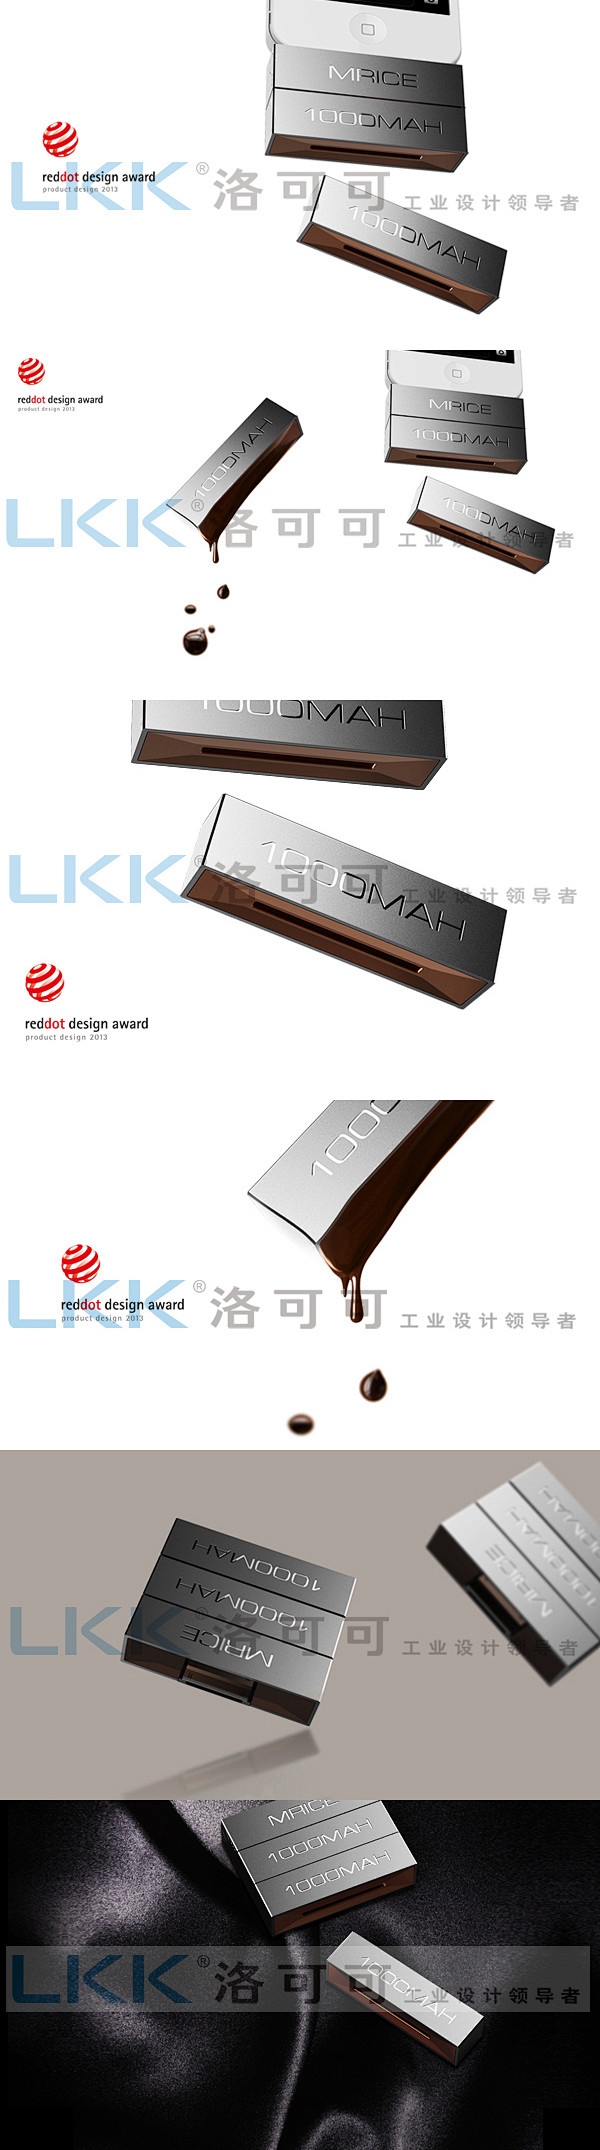 LKK洛可可为米粒科技设计的组合式移动电...